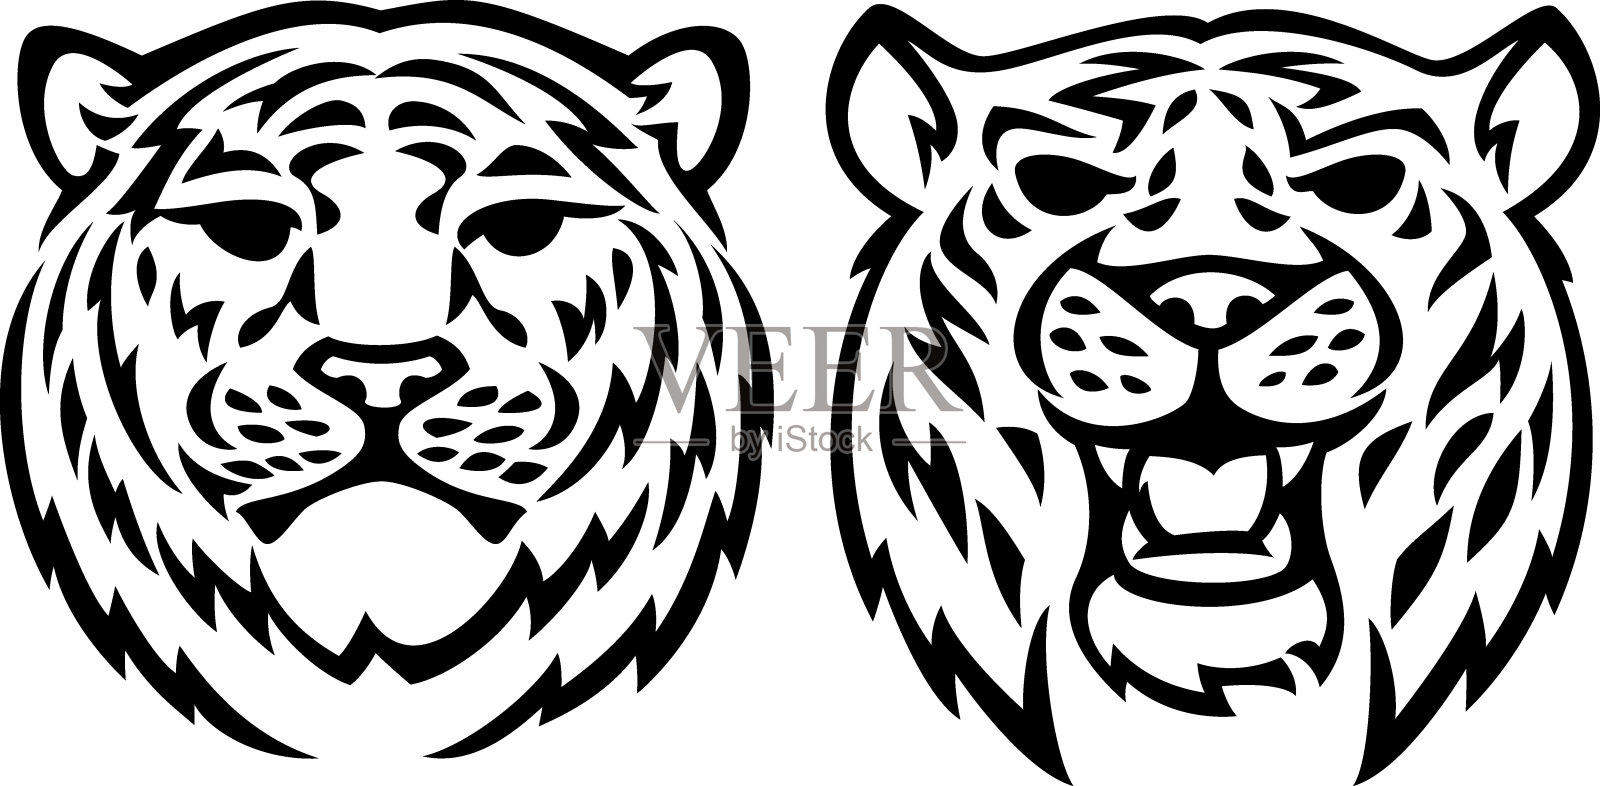 两个老虎头插画图片素材